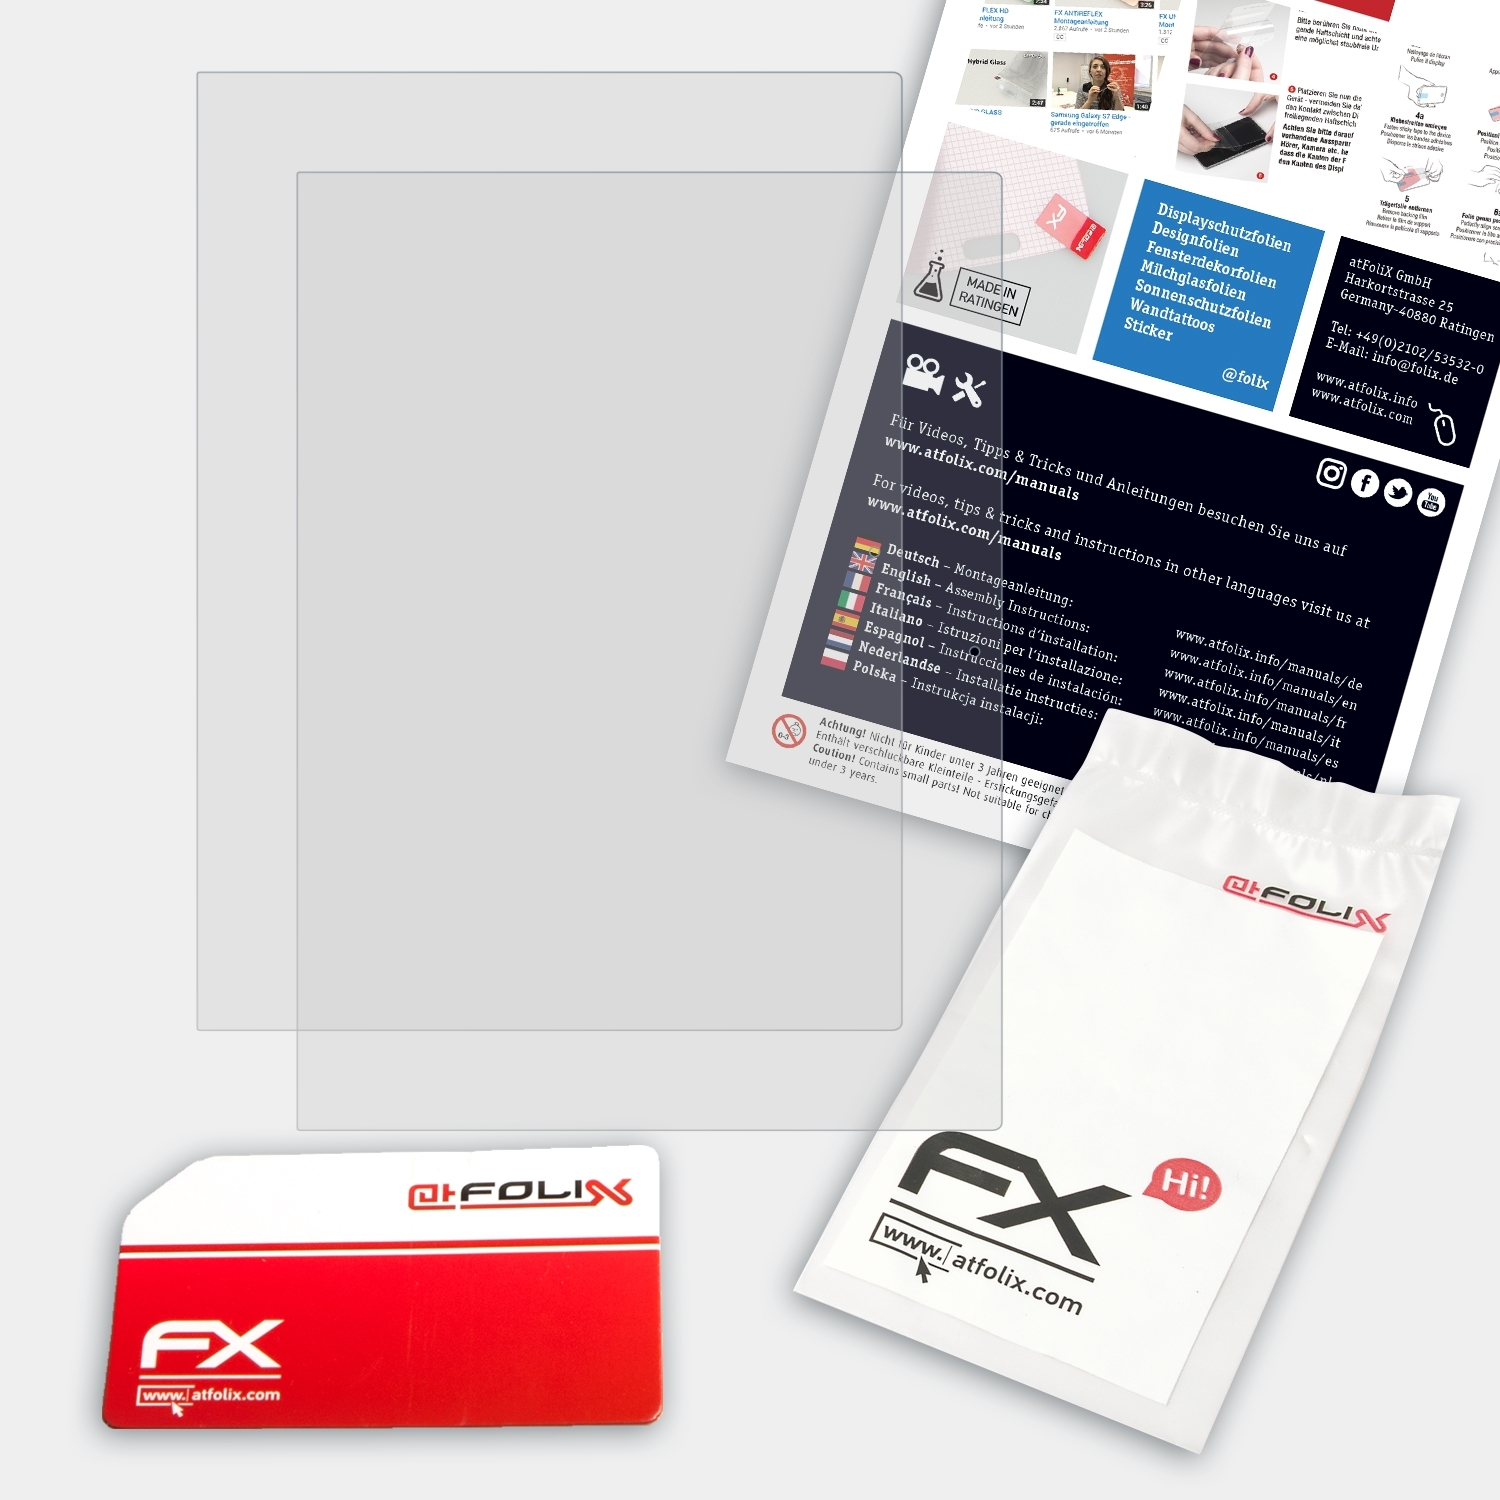 2x Pixelbook) Displayschutz(für ATFOLIX Google FX-Antireflex